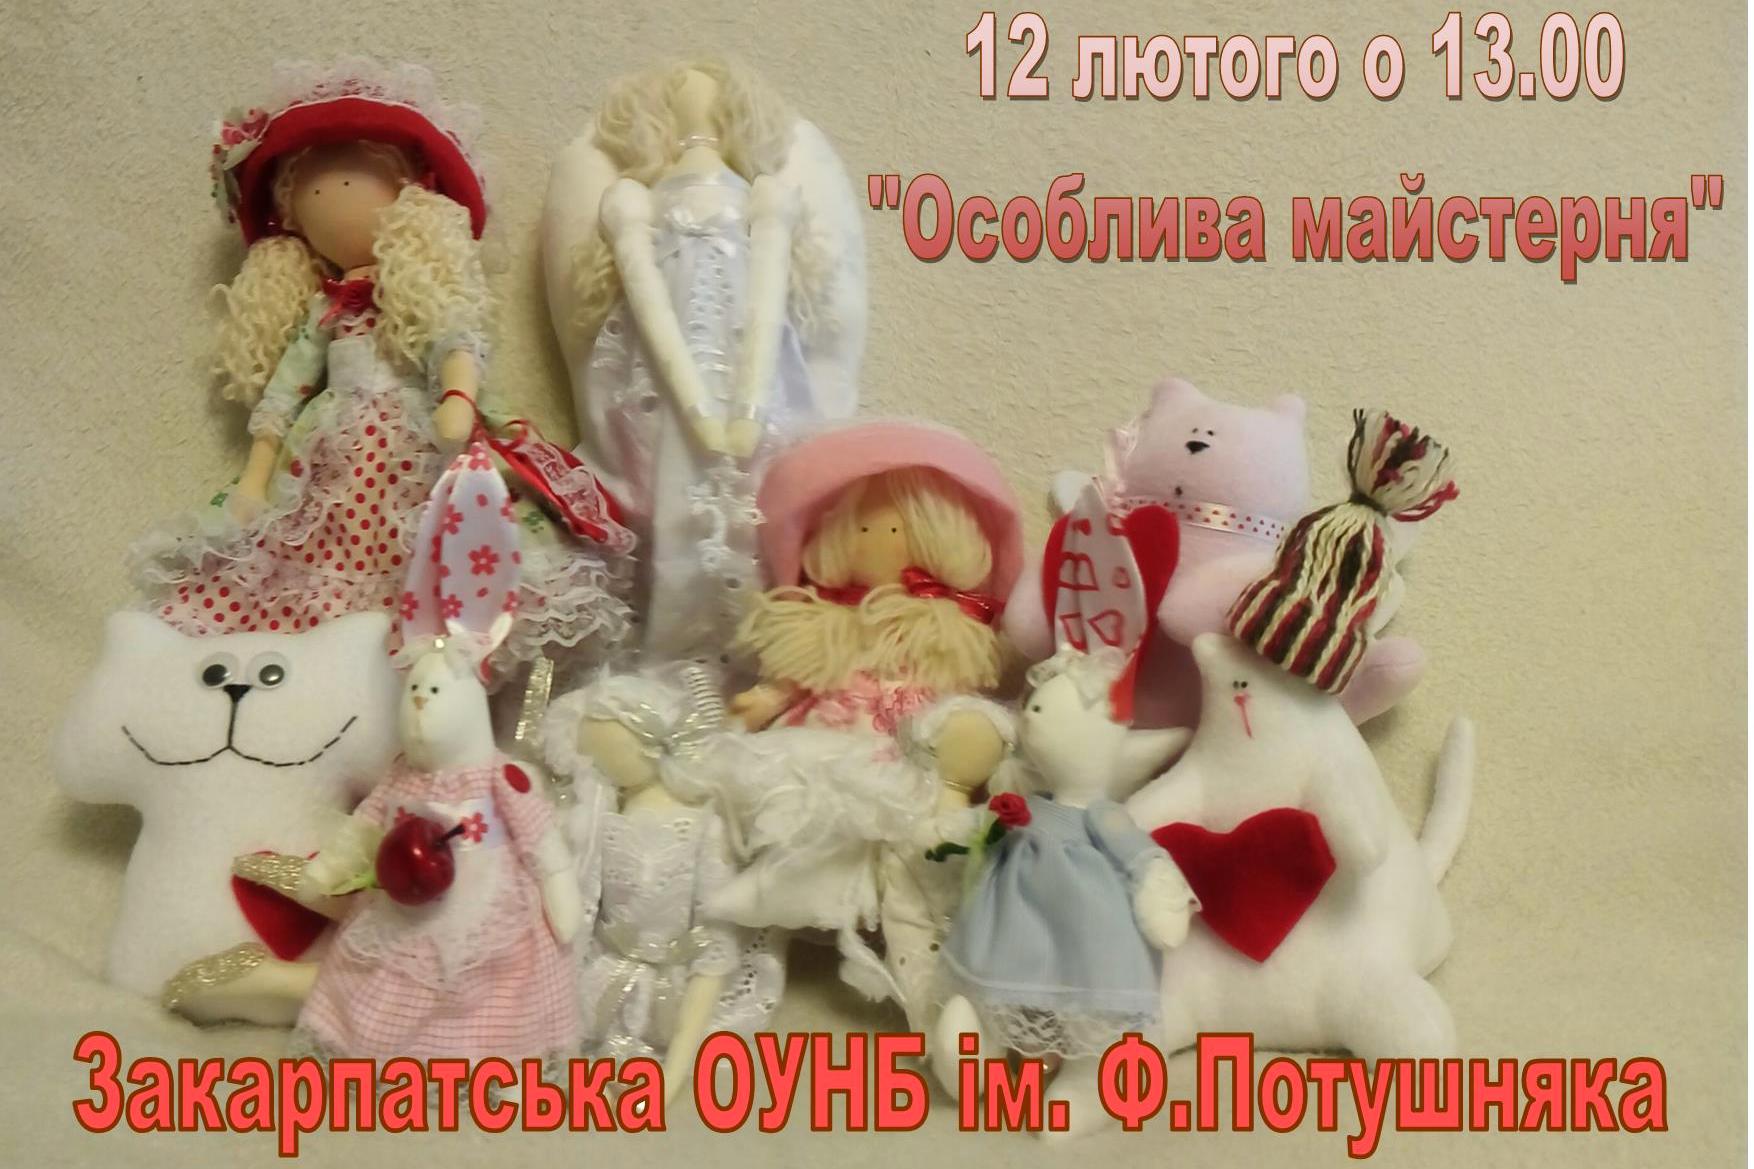 12 февраля в Ужгороде состоится праздничный мастер-класс по изготовлению сувениров и мягких игрушек.